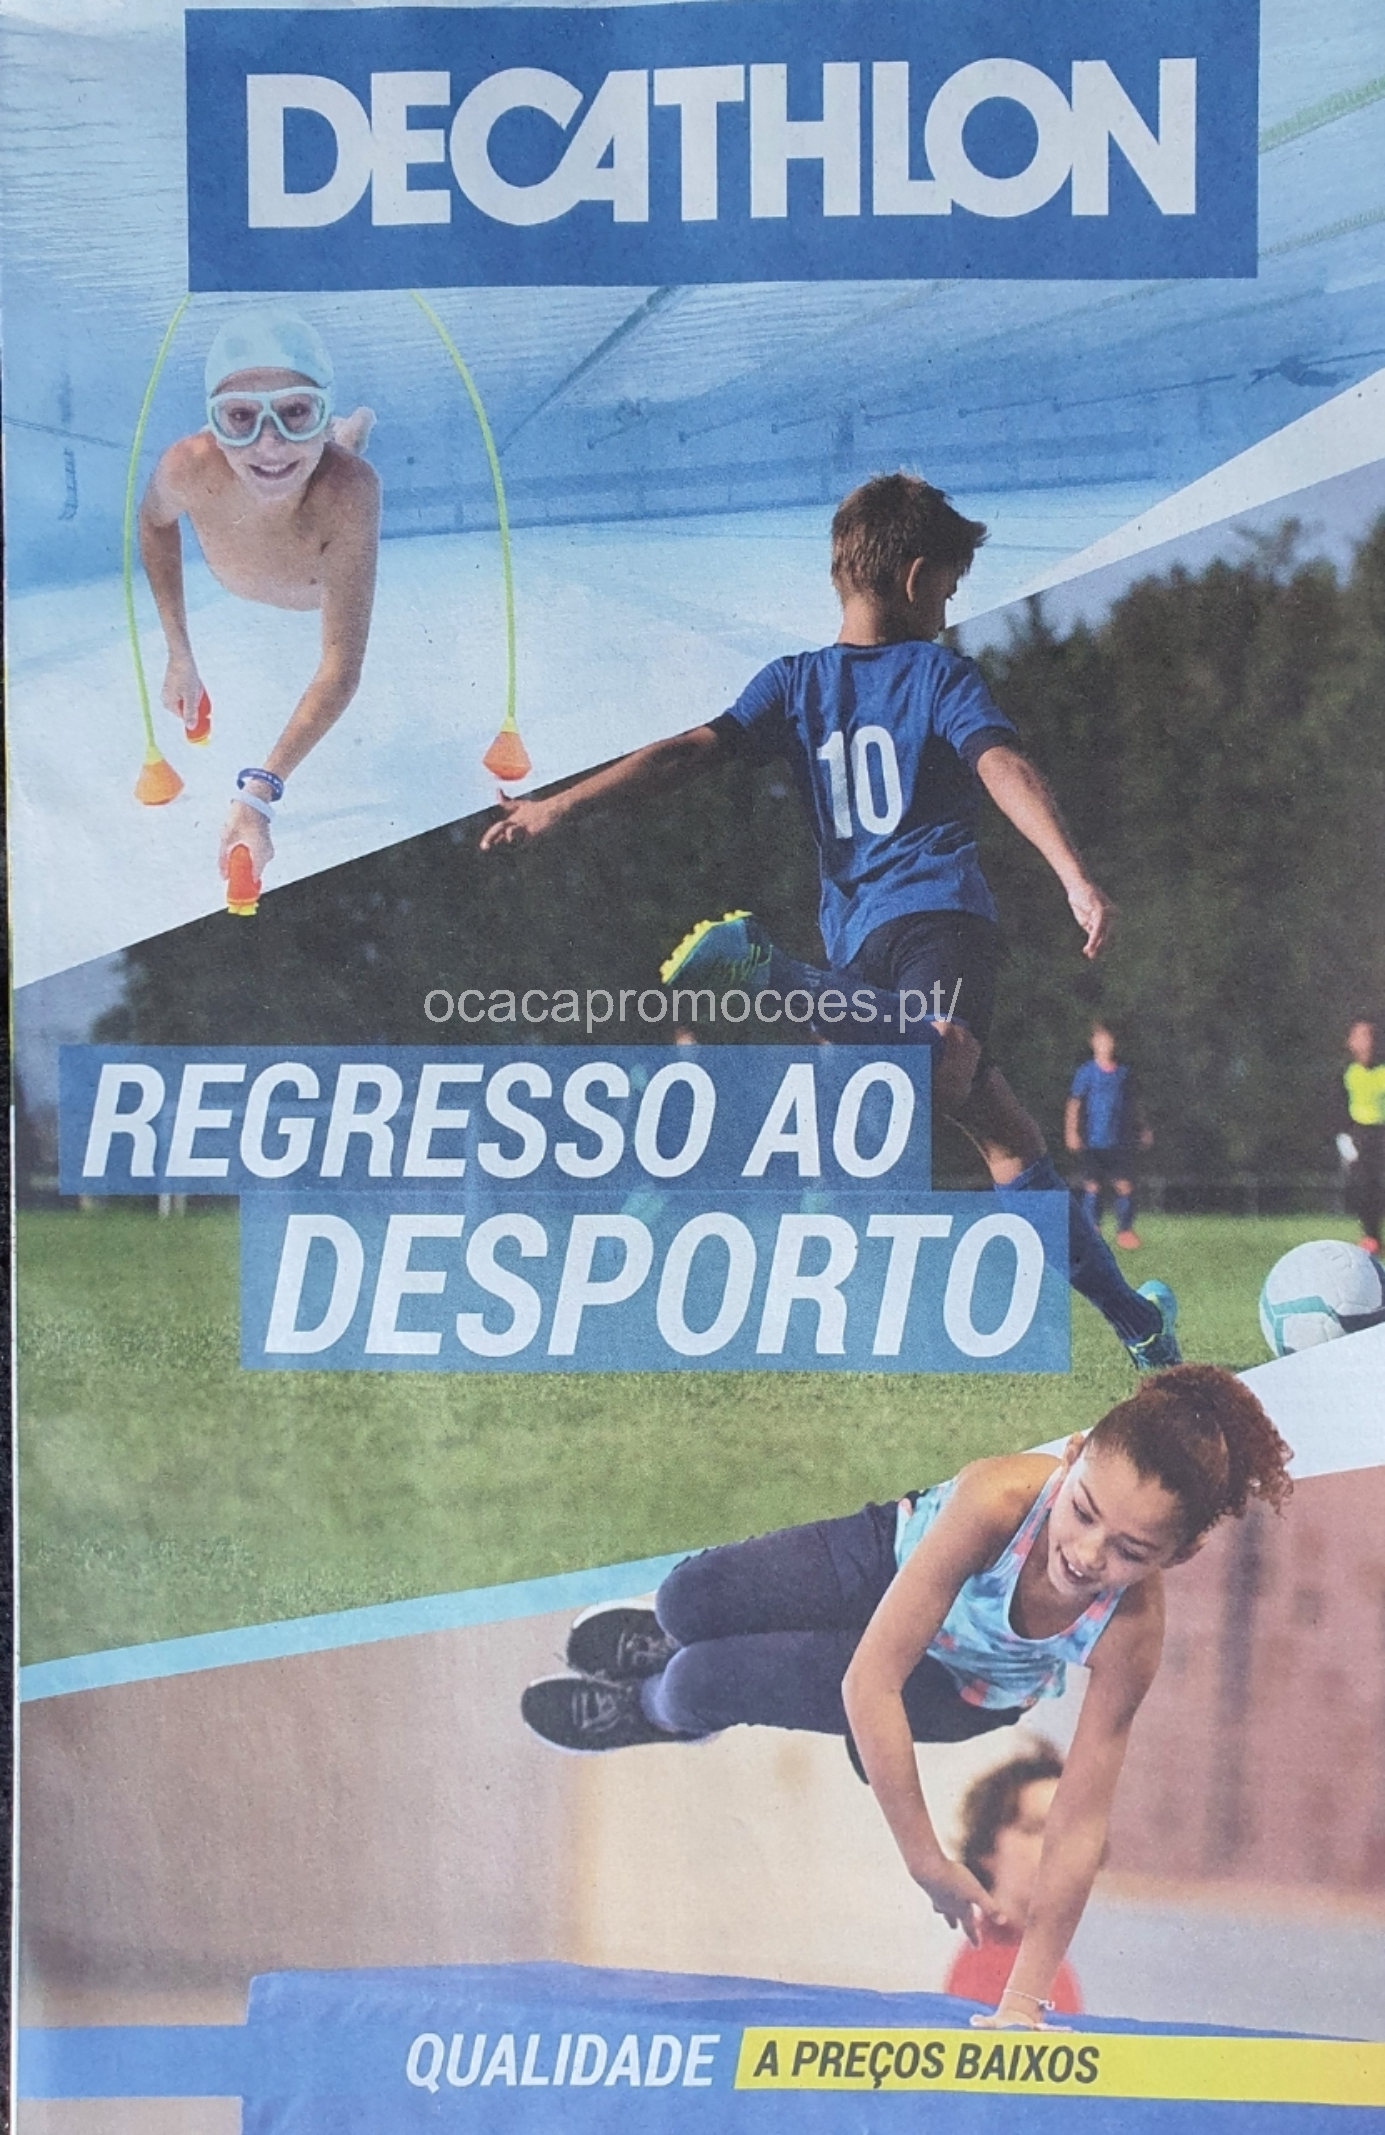 Novo Folheto DECATHLON Preços Baixos - Corrida e Atletismo - Blog 200 -  Últimos Folhetos, Antevisões, Promoções e Descontos